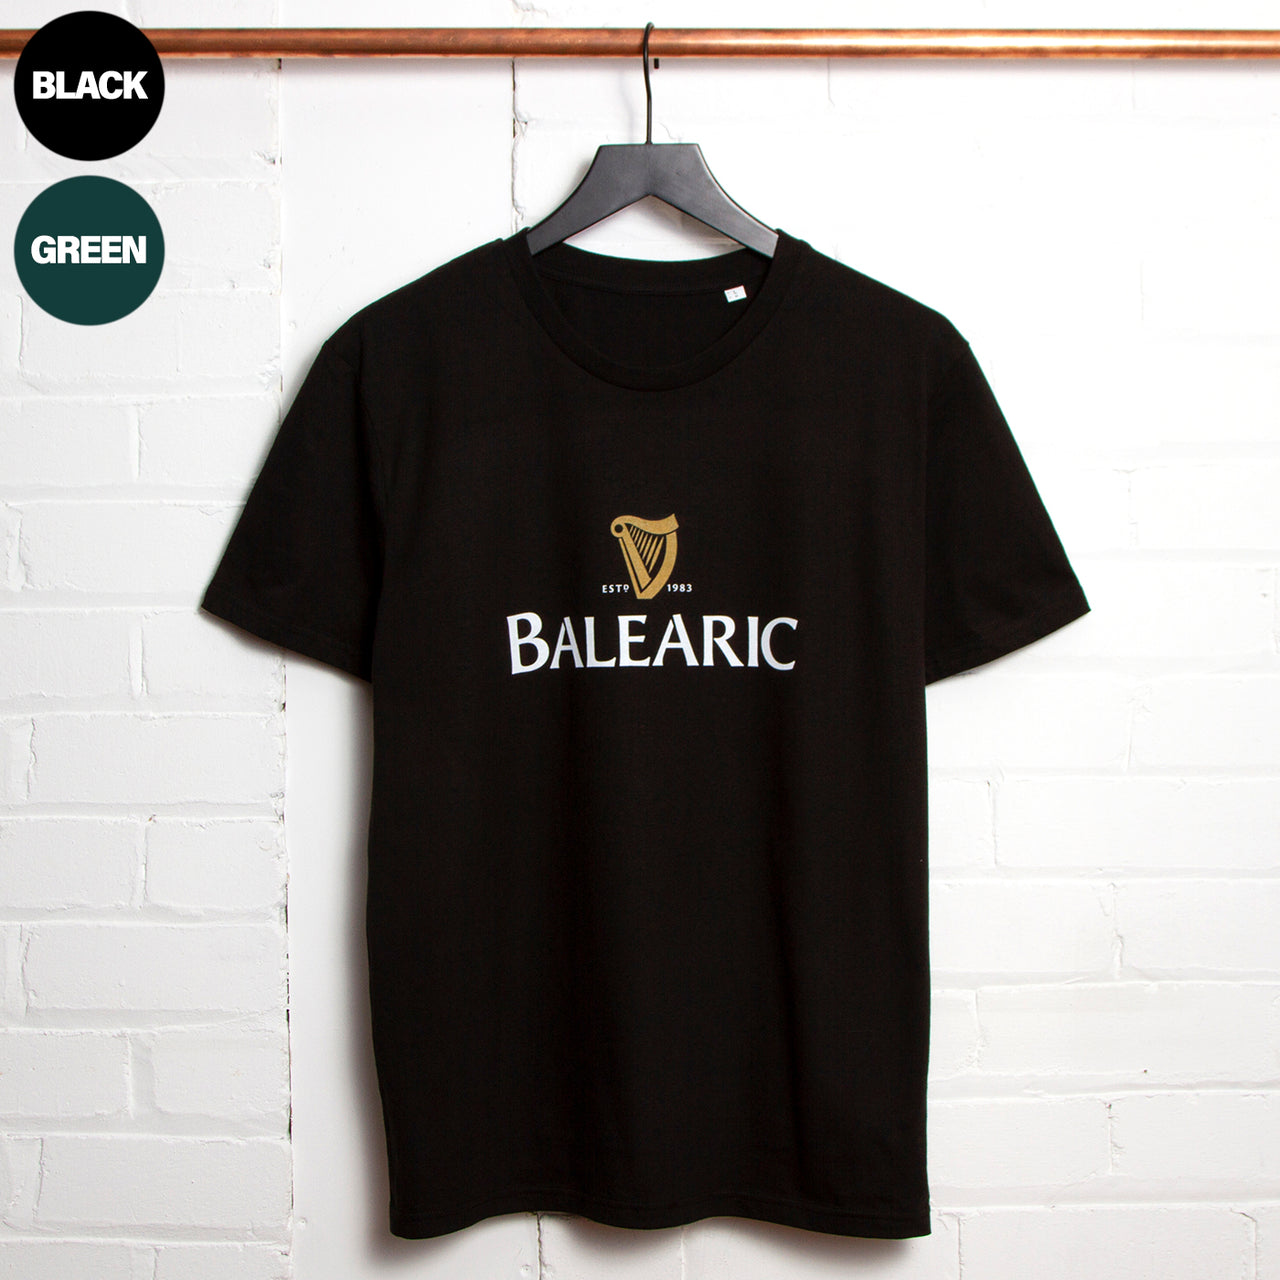 Balearic Harp - Tshirt - Black or Green